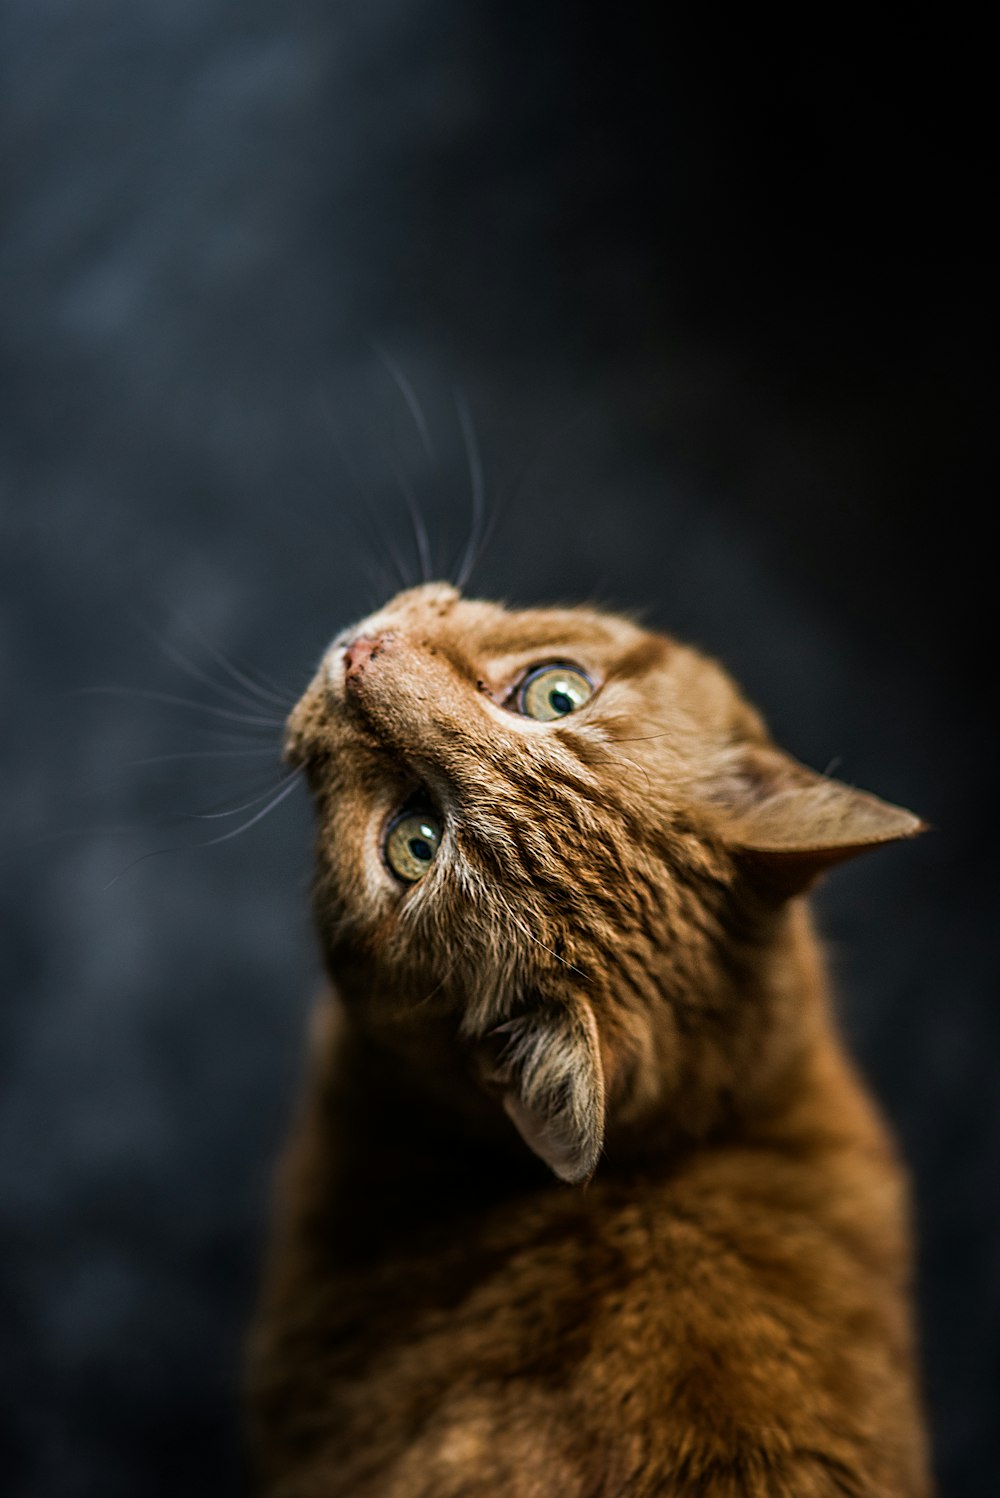 オレンジ色のぶち猫の選択焦点とローアングル撮影